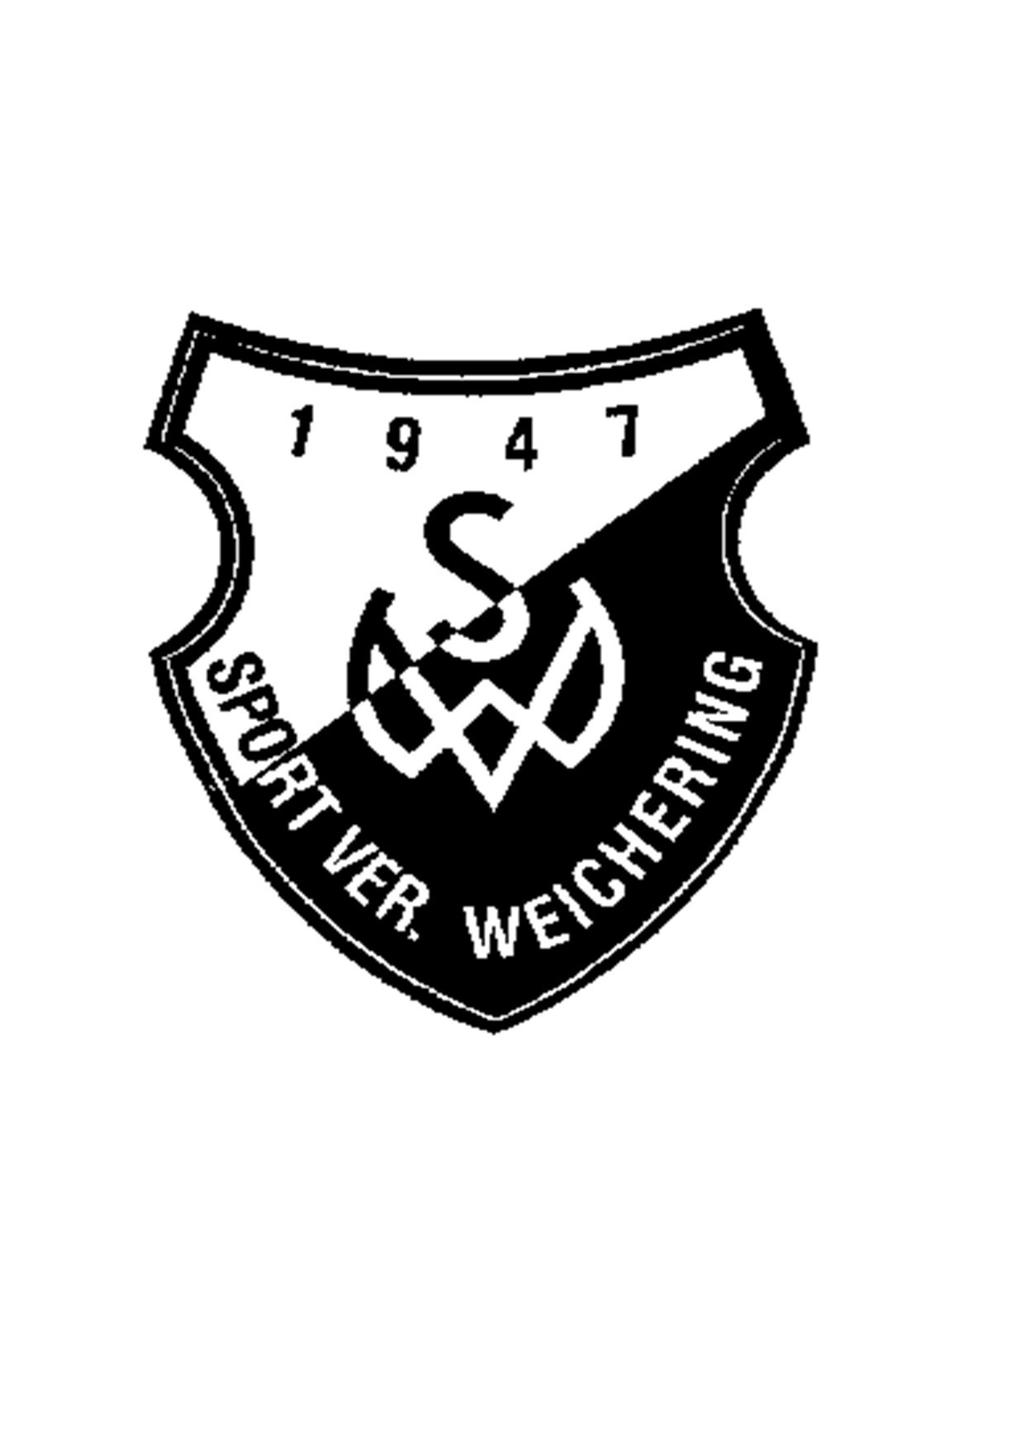 Stadionzeitung des SVW www.sv-weichering.